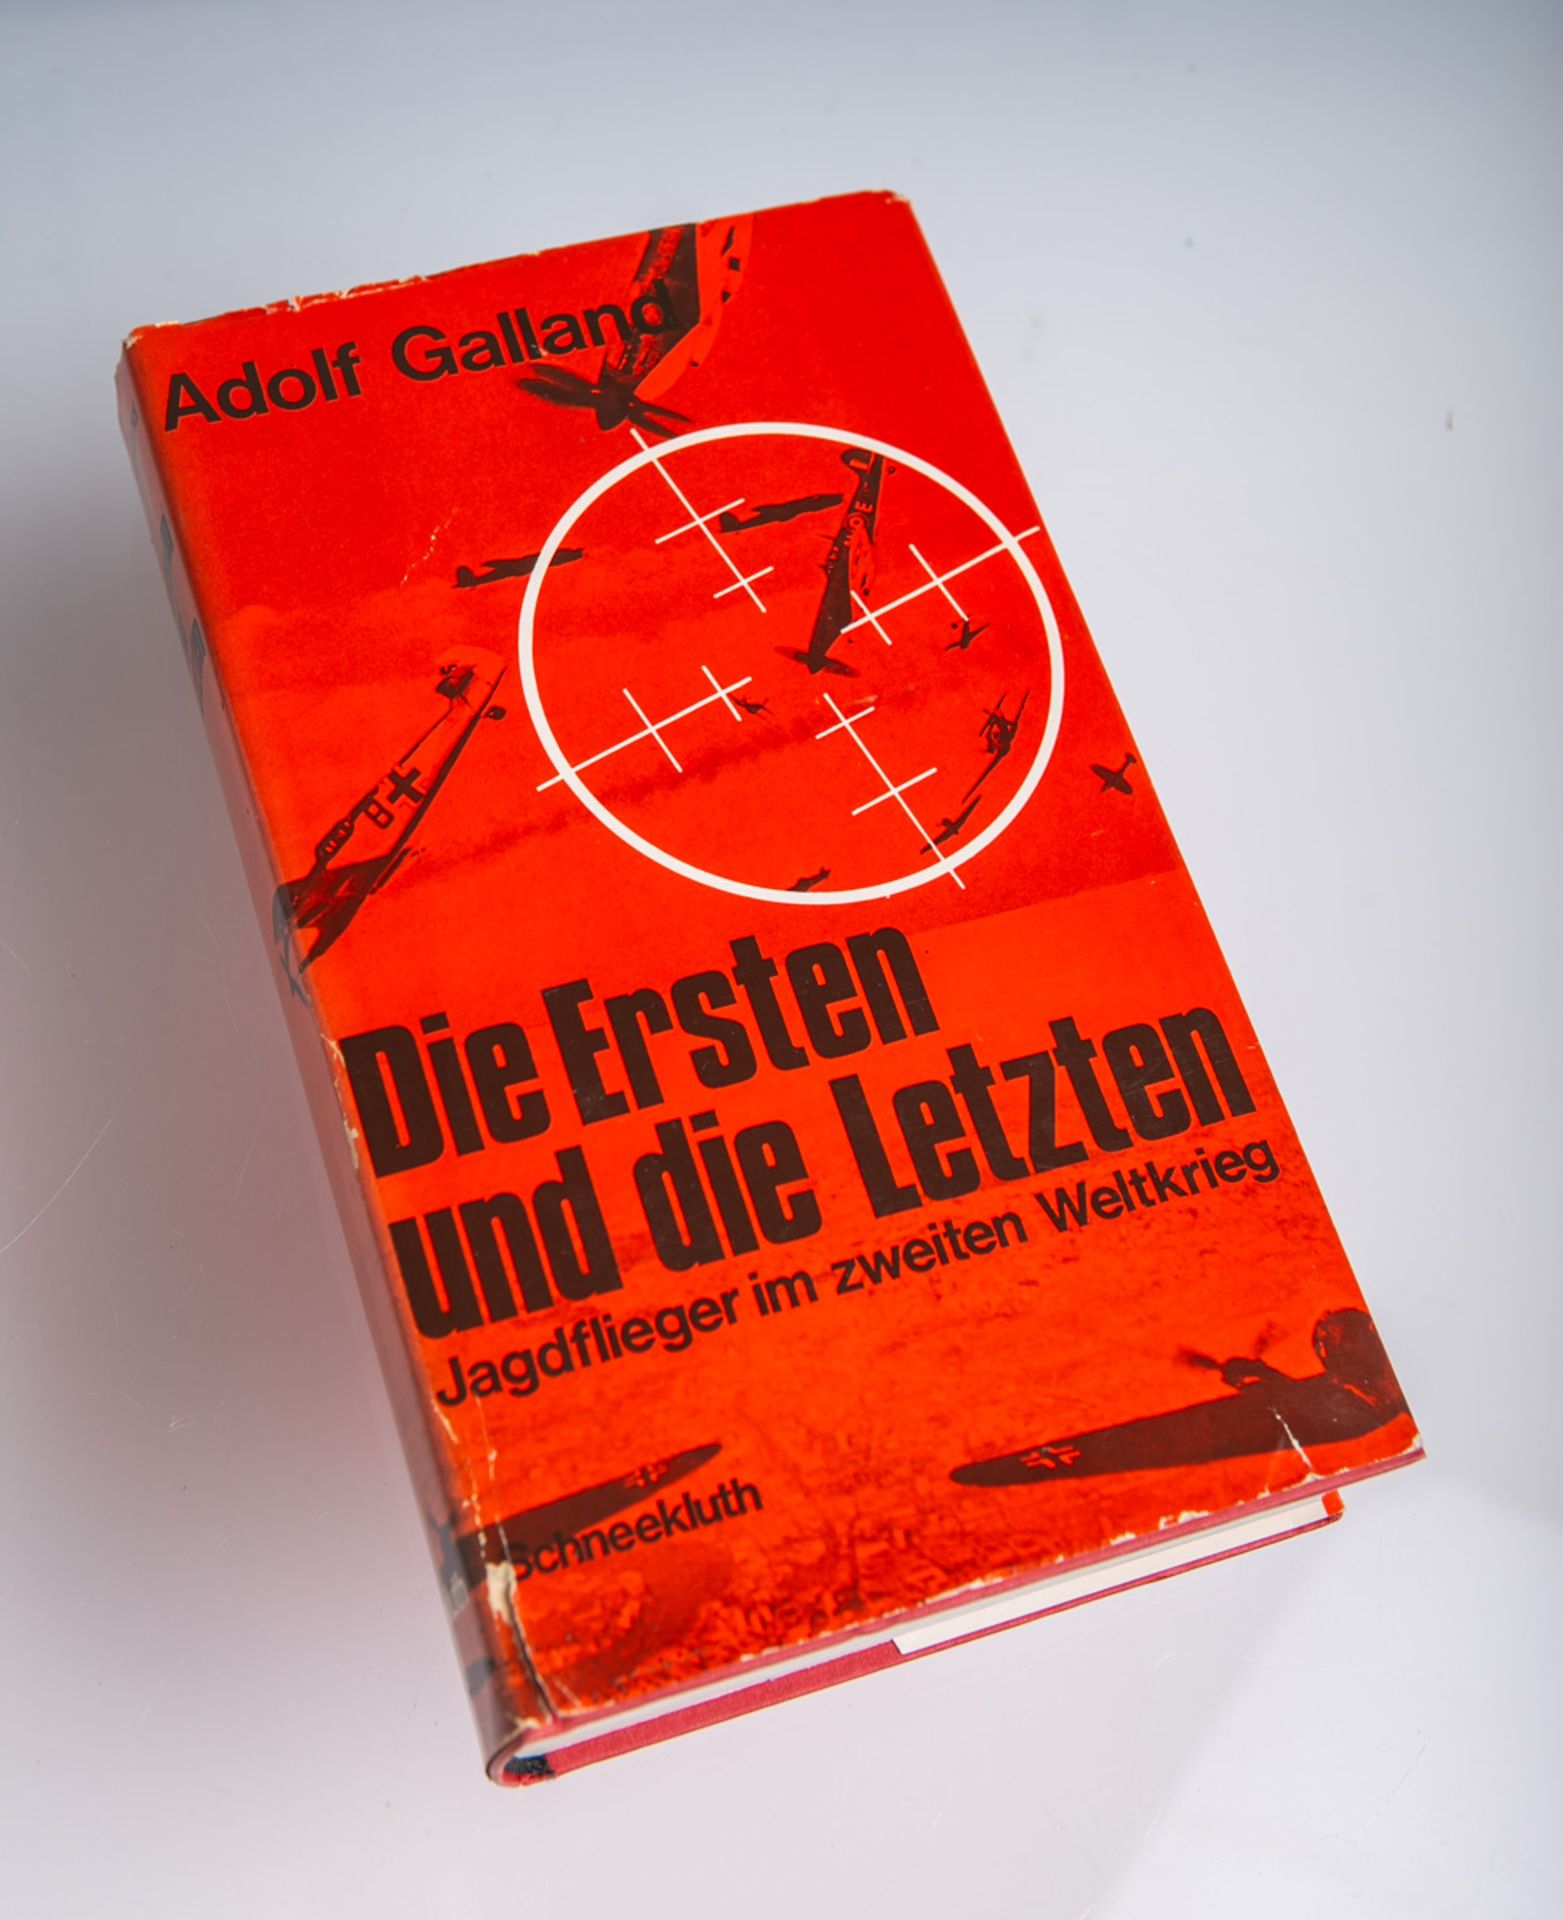 Galland, Adolf, "Die Ersten und die Letzten. Die Jagdflieger im Zweiten Weltkrieg"